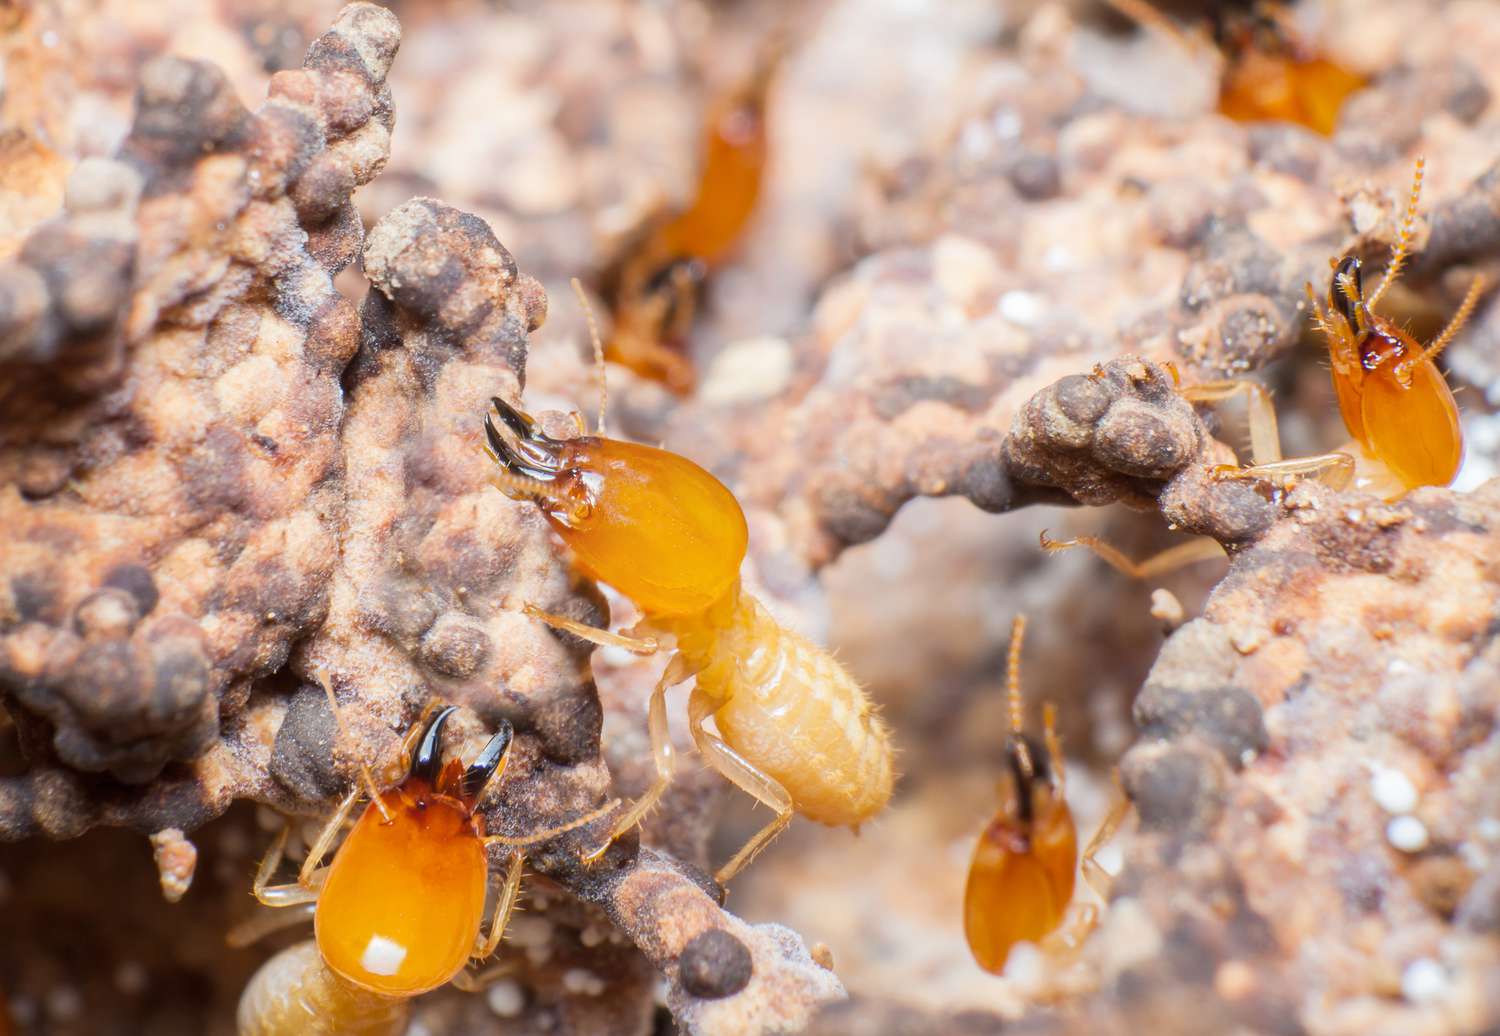 Primer plano de plagas de termitas.